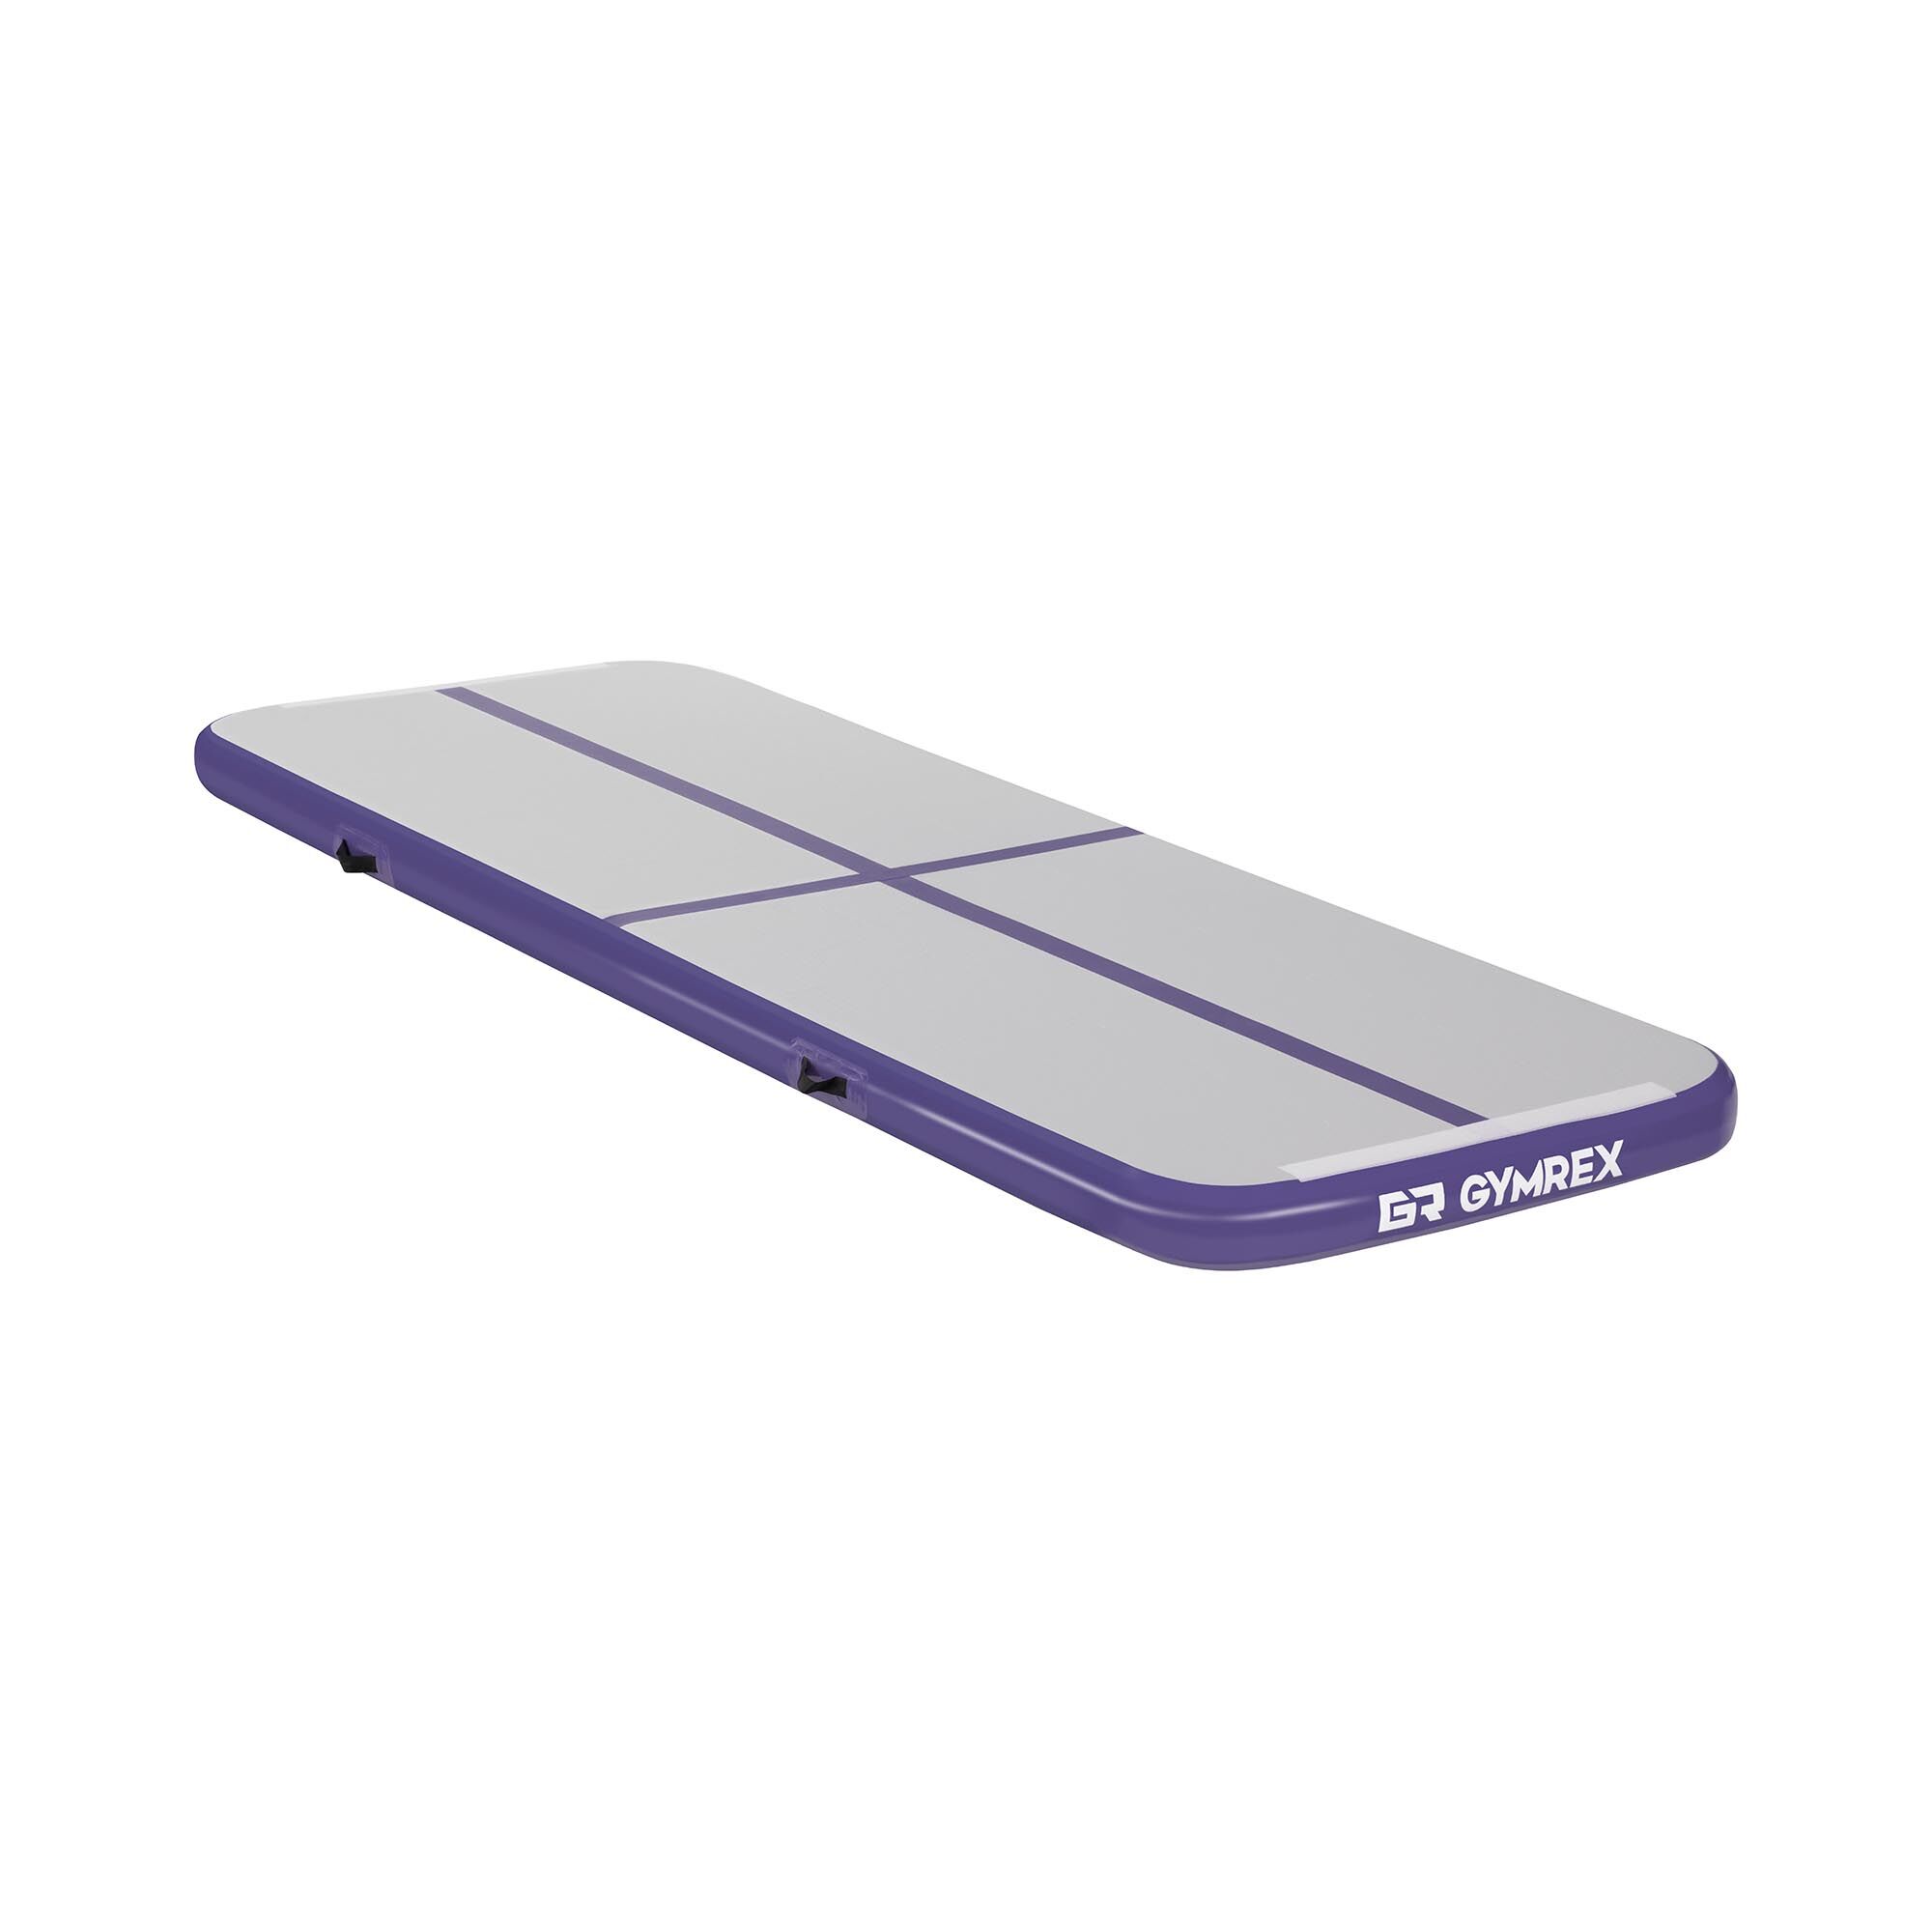 Gymrex Aufblasbare Turnmatte - Airtrack - 300 x 100 x 10 cm - 150 kg - grau/violett